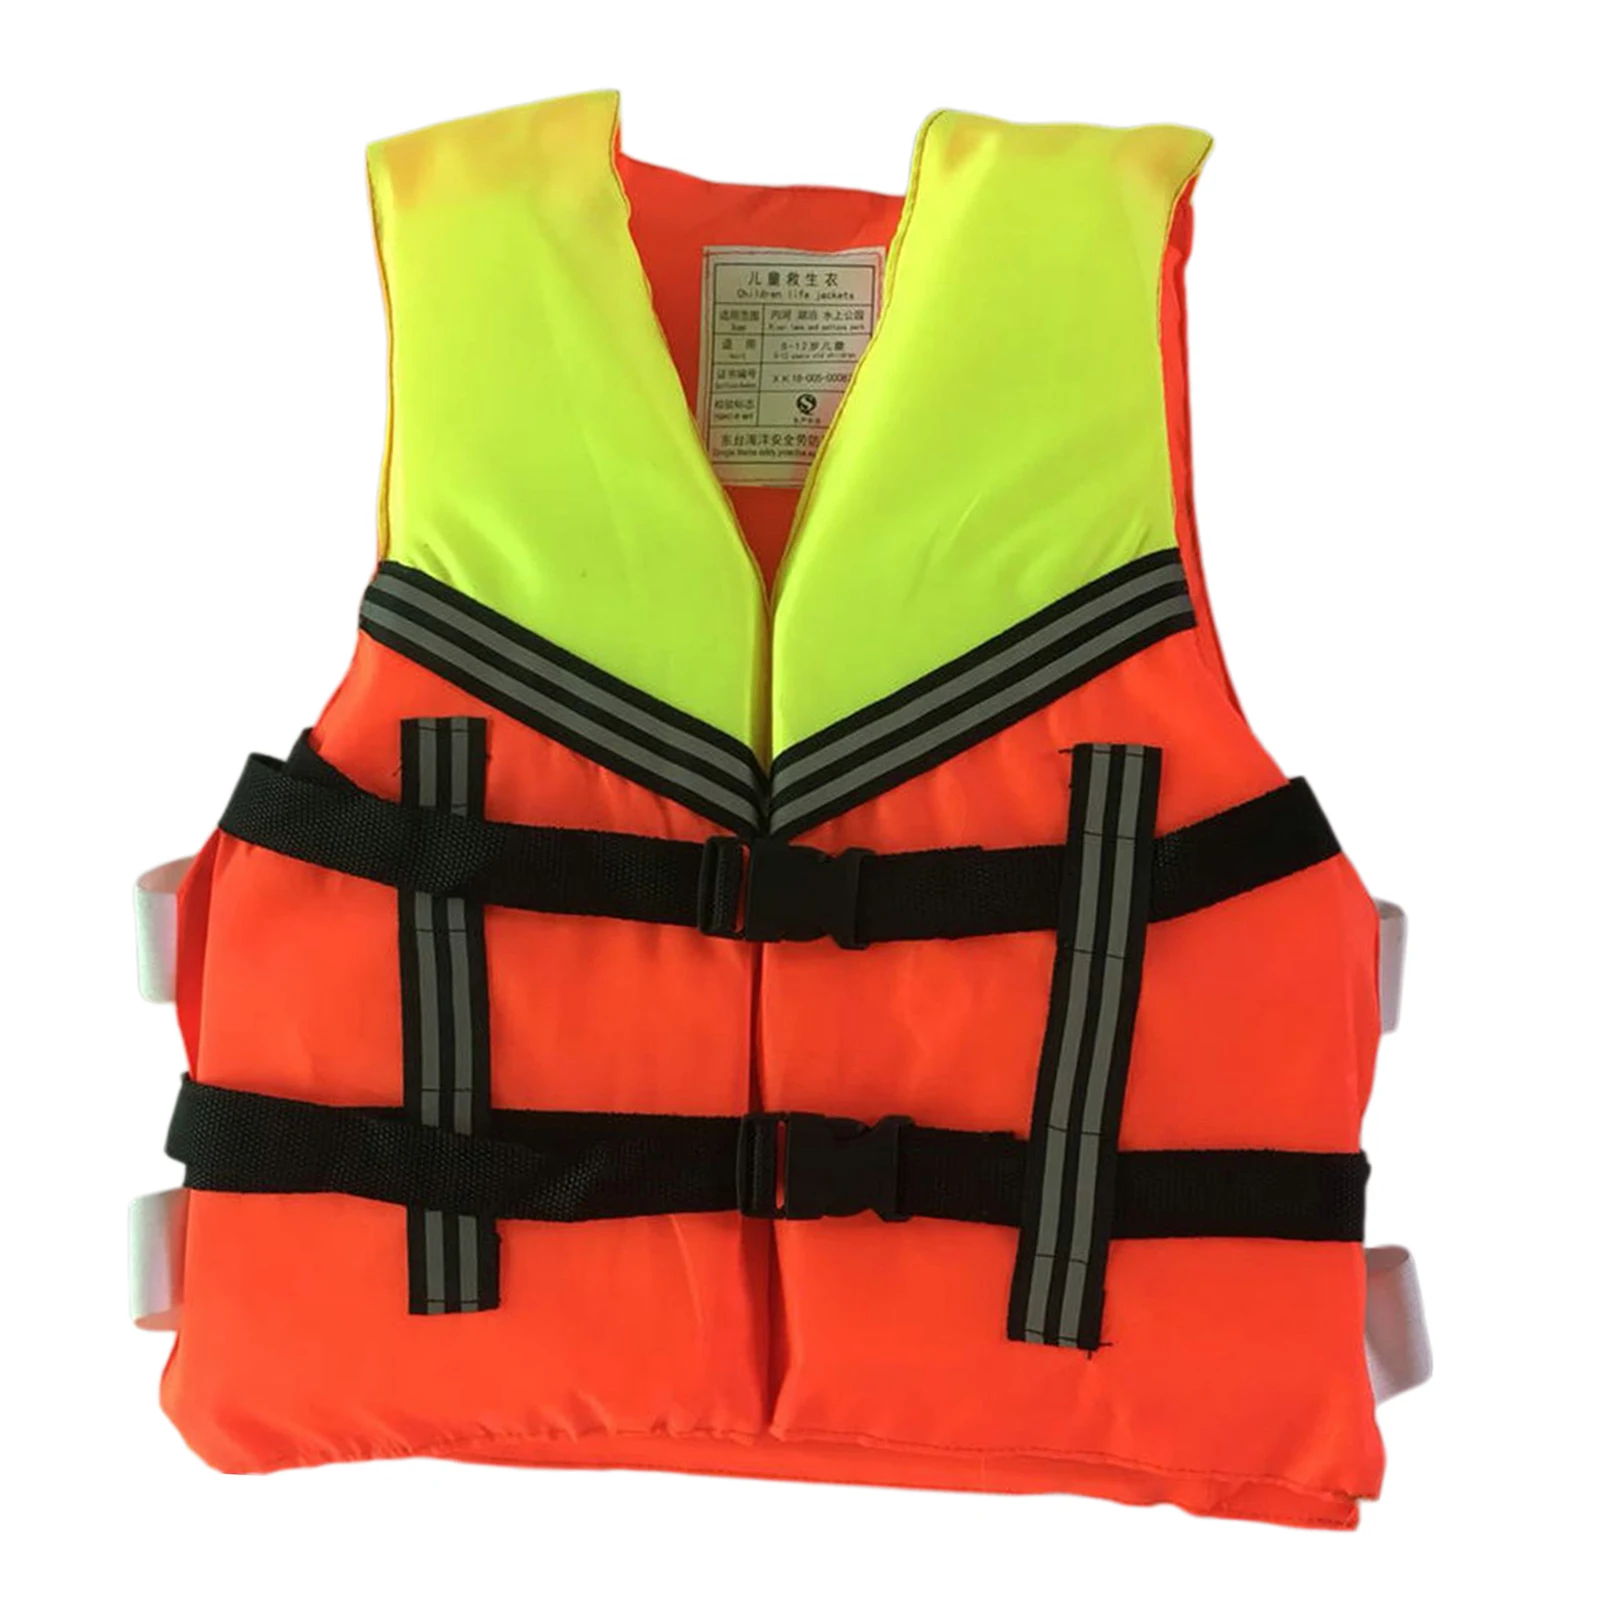 Unisex Float Jacket Kids Swim Vest Life Jacket Boating Children Swimsuit